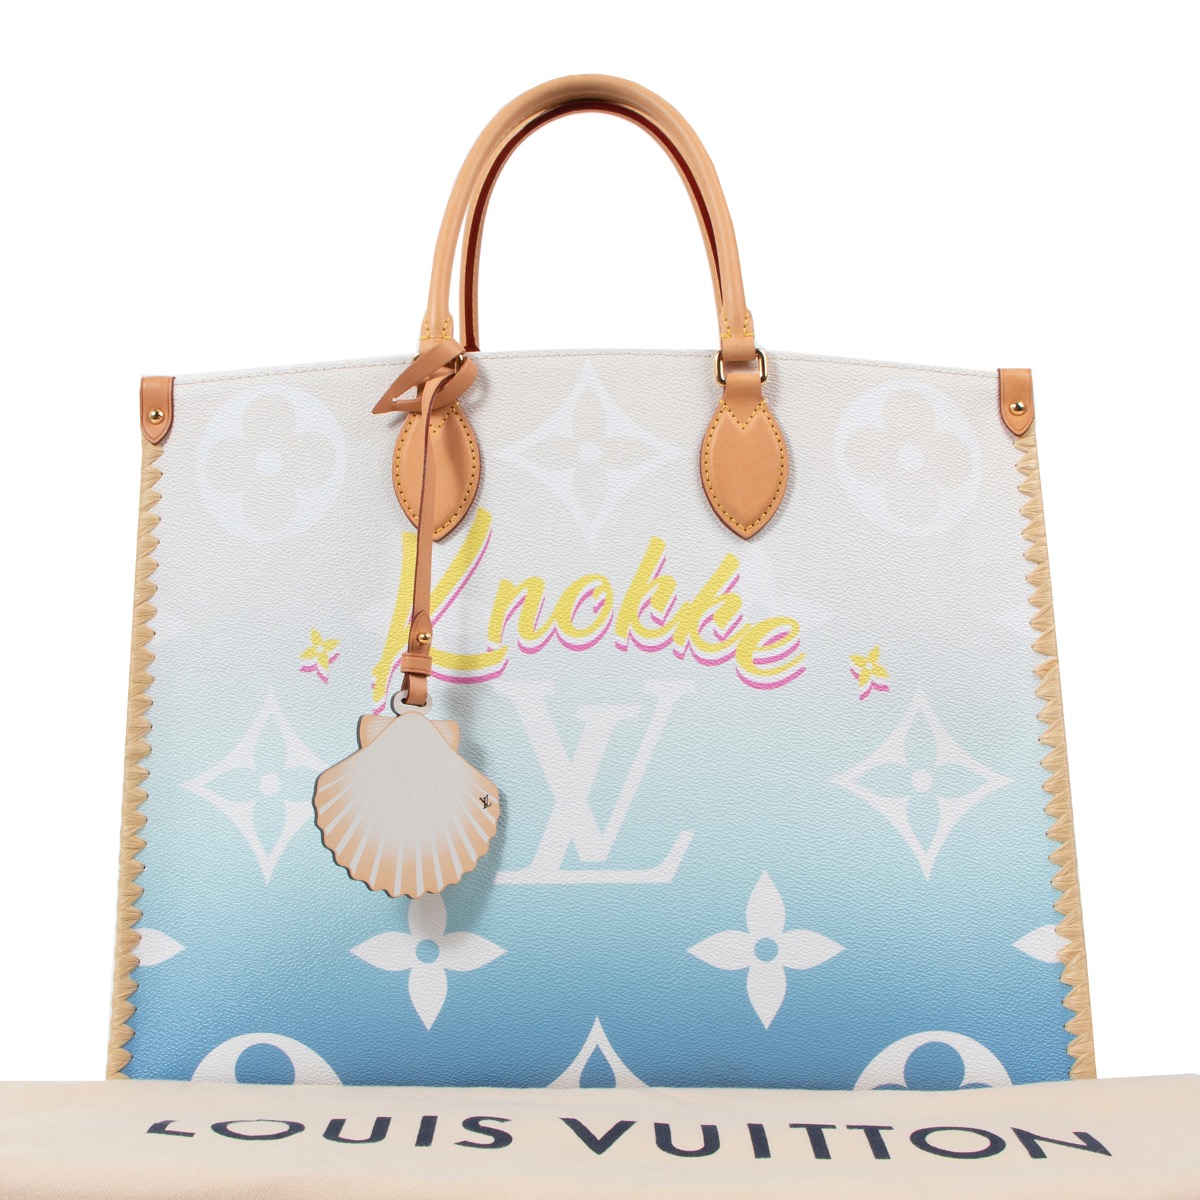 Knokke-Le-Zoute aura son sac Louis Vuitton cet été - PREMIUM